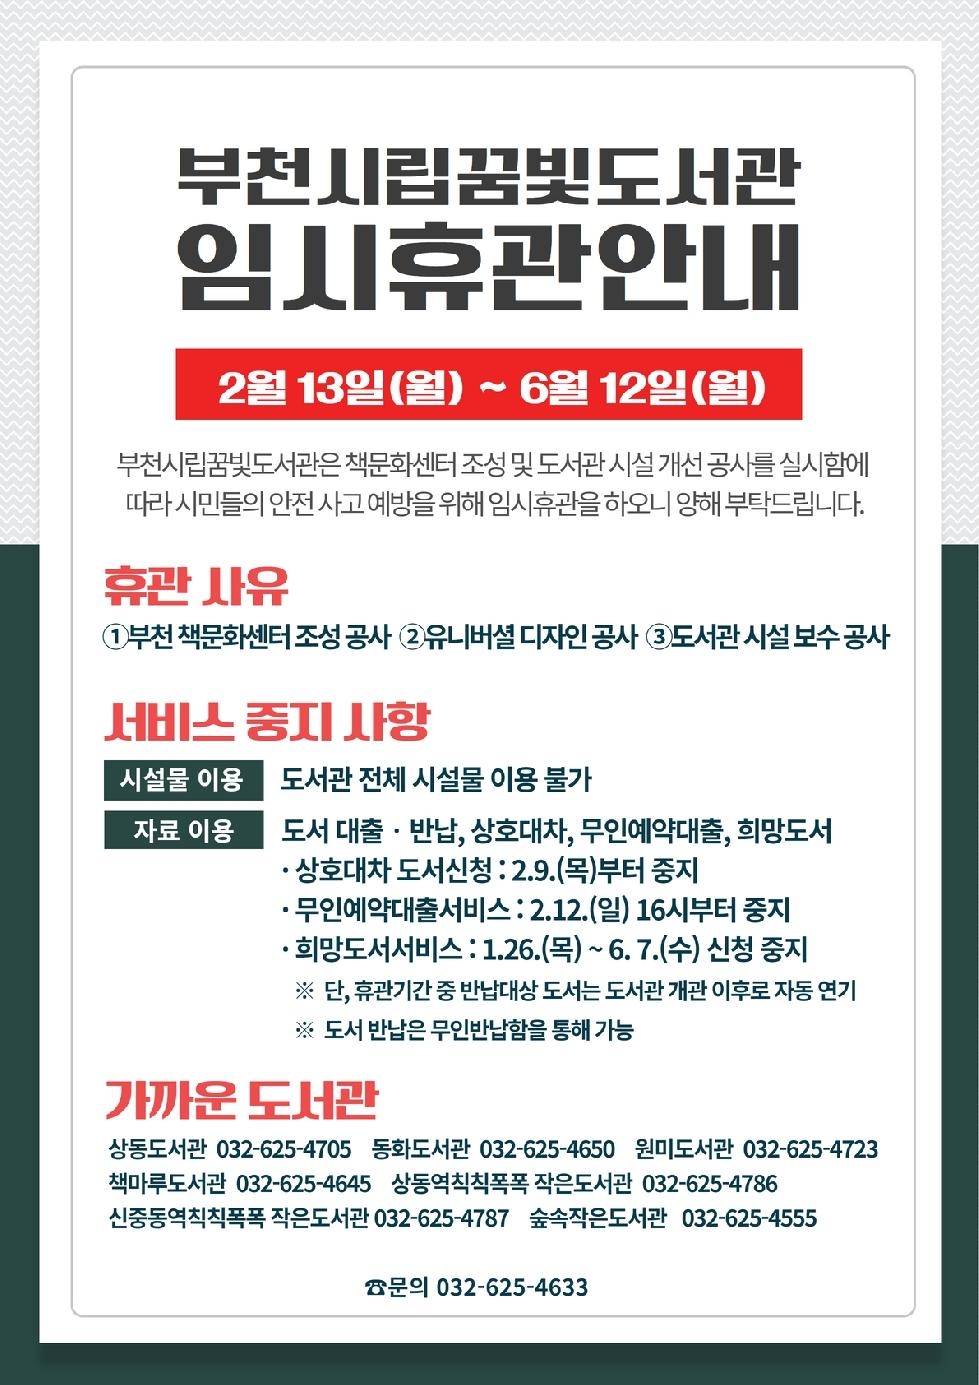 부천시립꿈빛도서관, 2월 13일부터 임시휴관